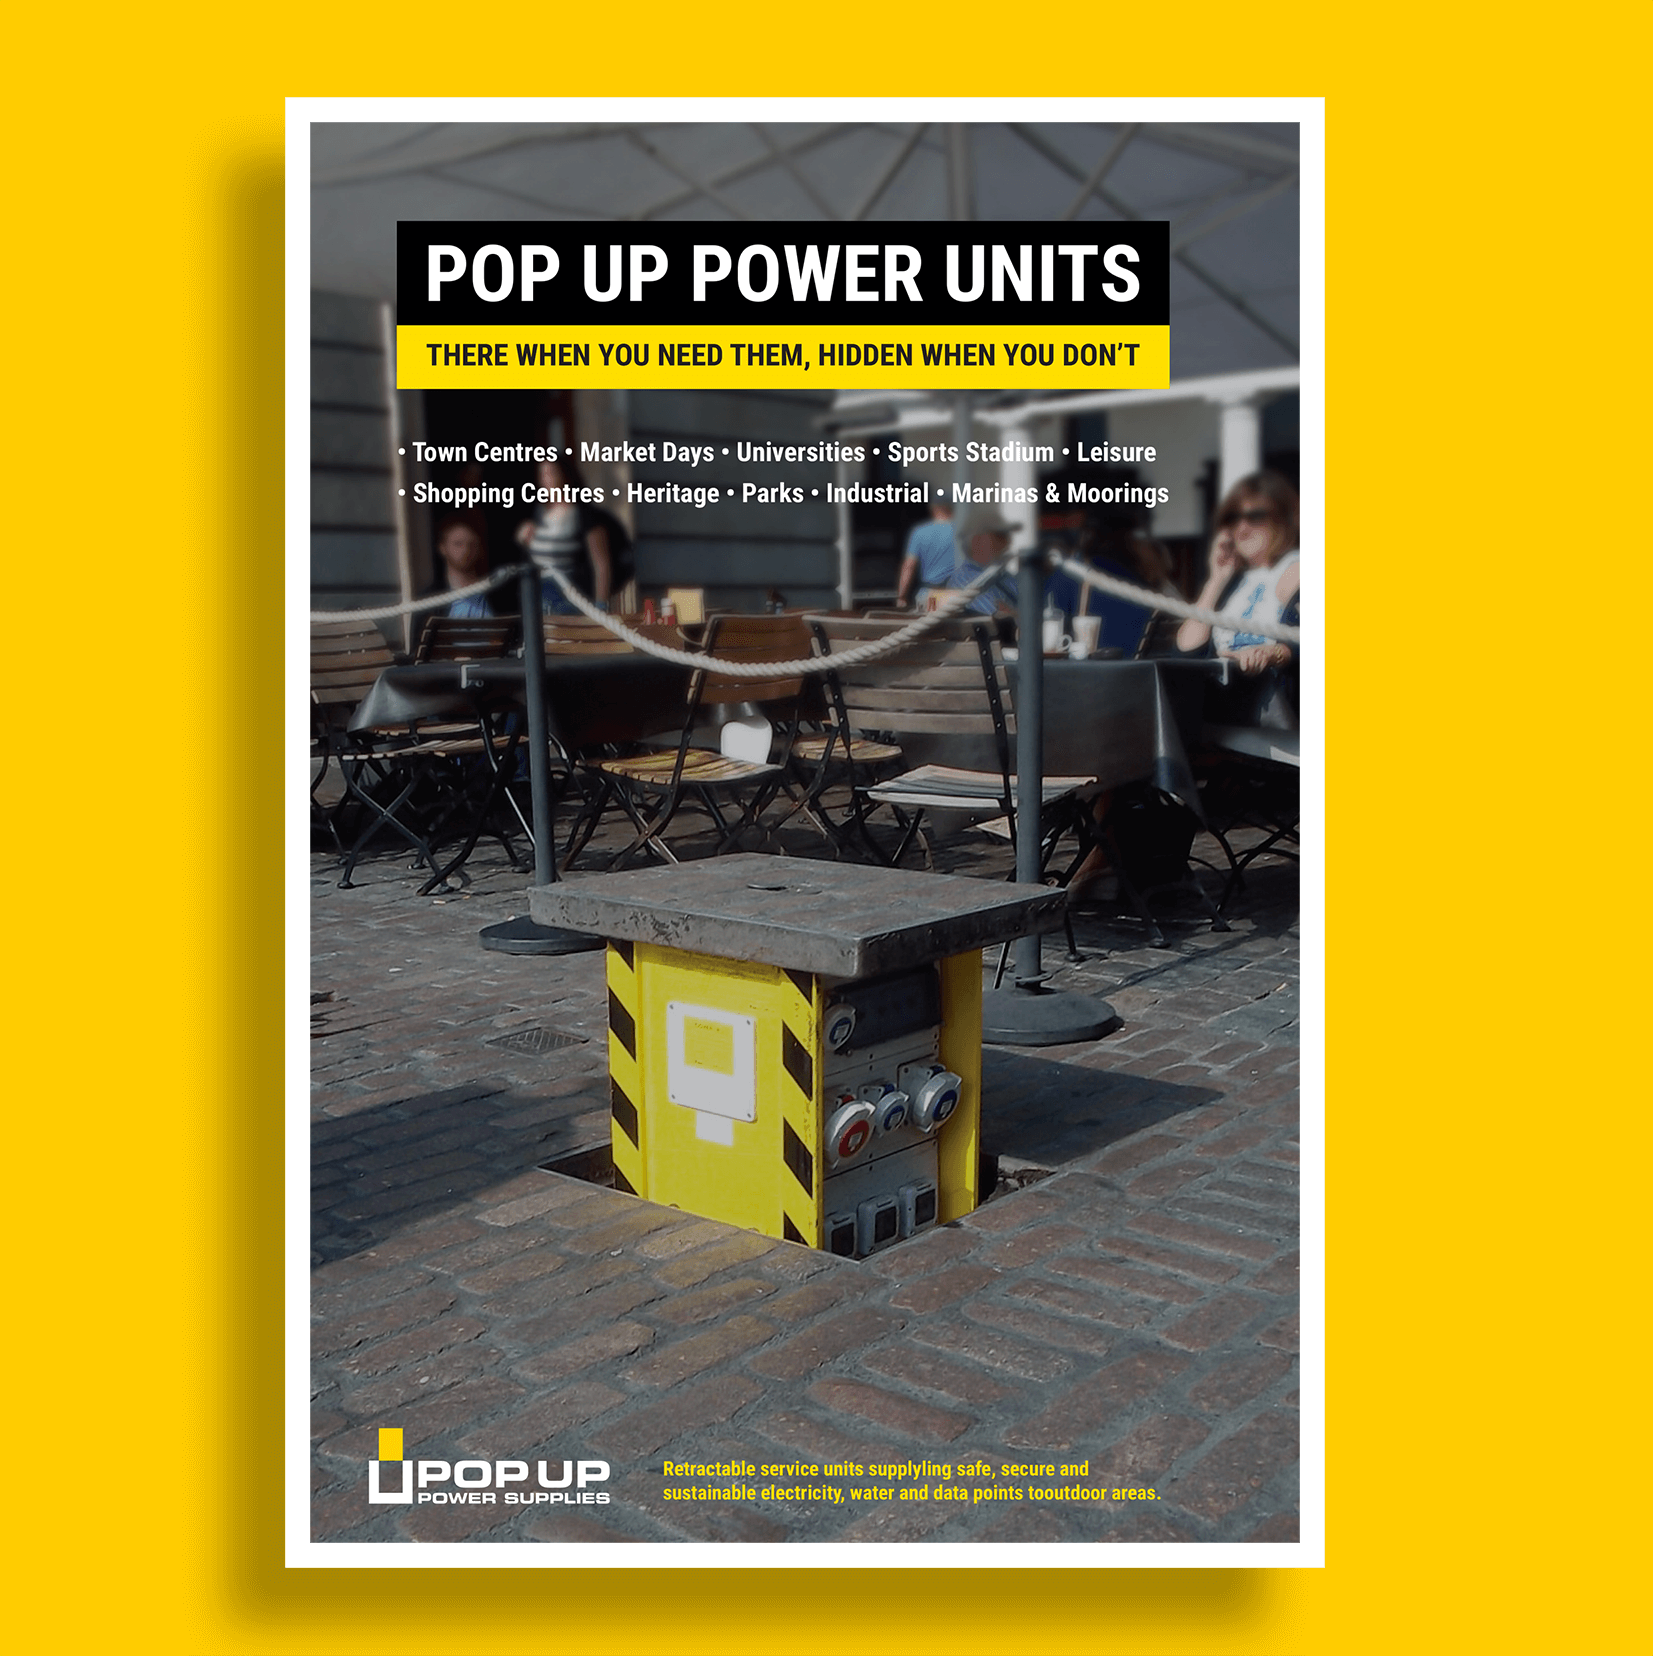 Pop Up Power Unit downloadable brochure image